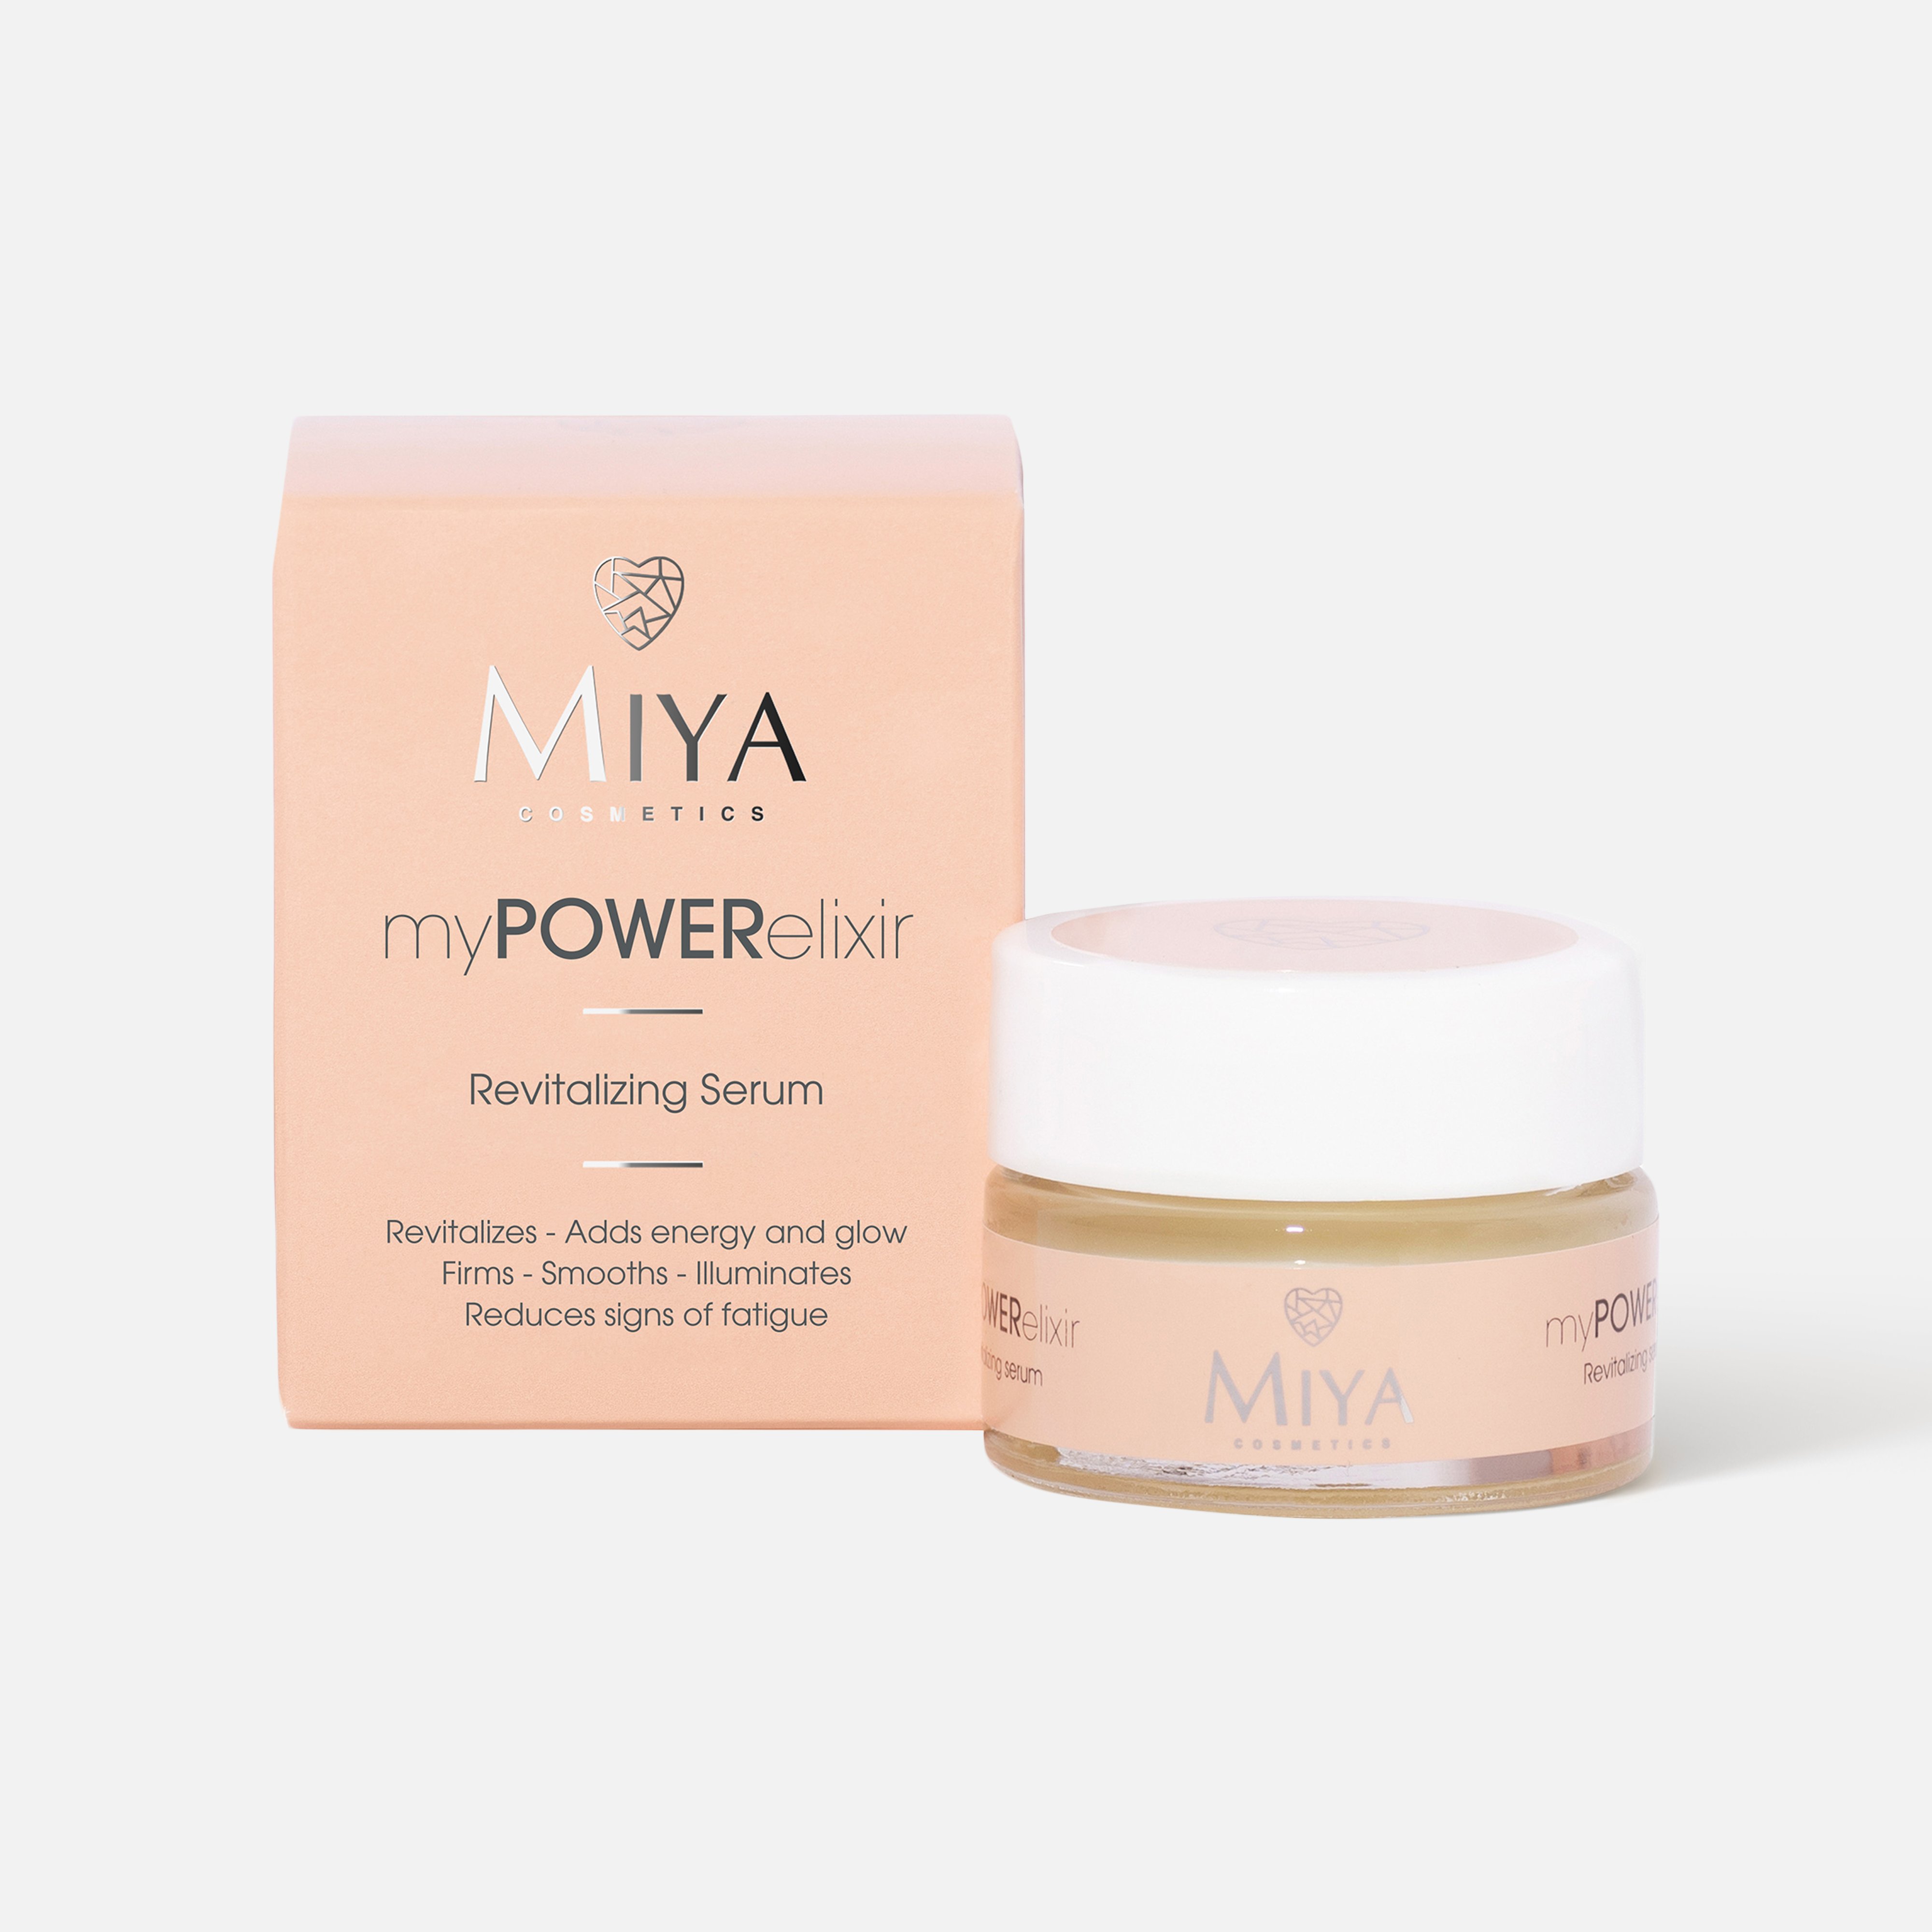 Сыворотка для лица Miya cosmetics myPOWERelixir восстанавливающая, 15 мл inspira cosmetics разглаживающая морщины и устраняющая сухость сыворотка 30 мл